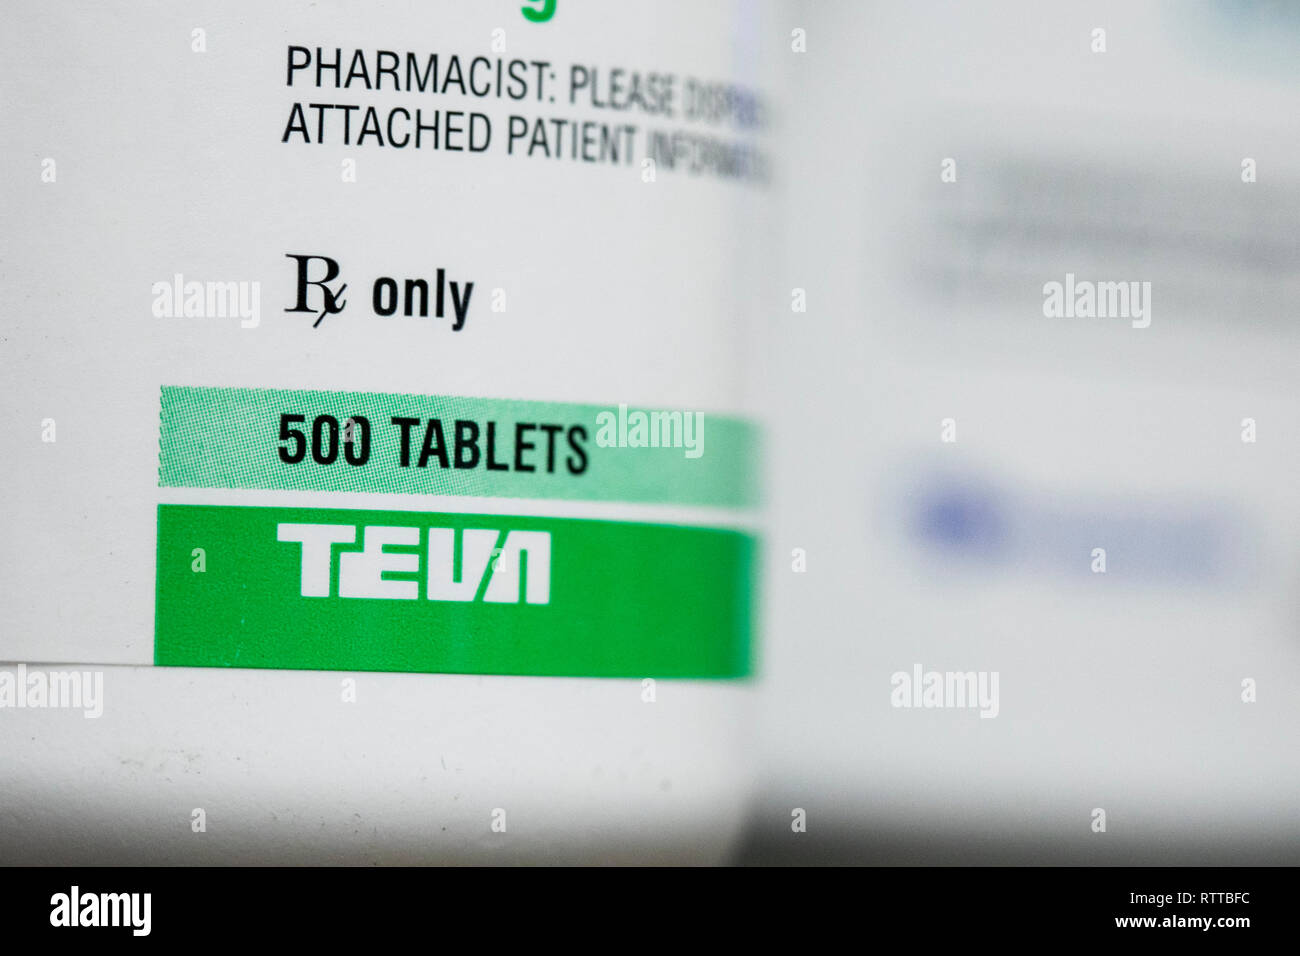 Teva Pharmaceutical Industries un logo est visible sur l'emballage de produits pharmaceutiques sur ordonnance photographié dans une pharmacie Banque D'Images